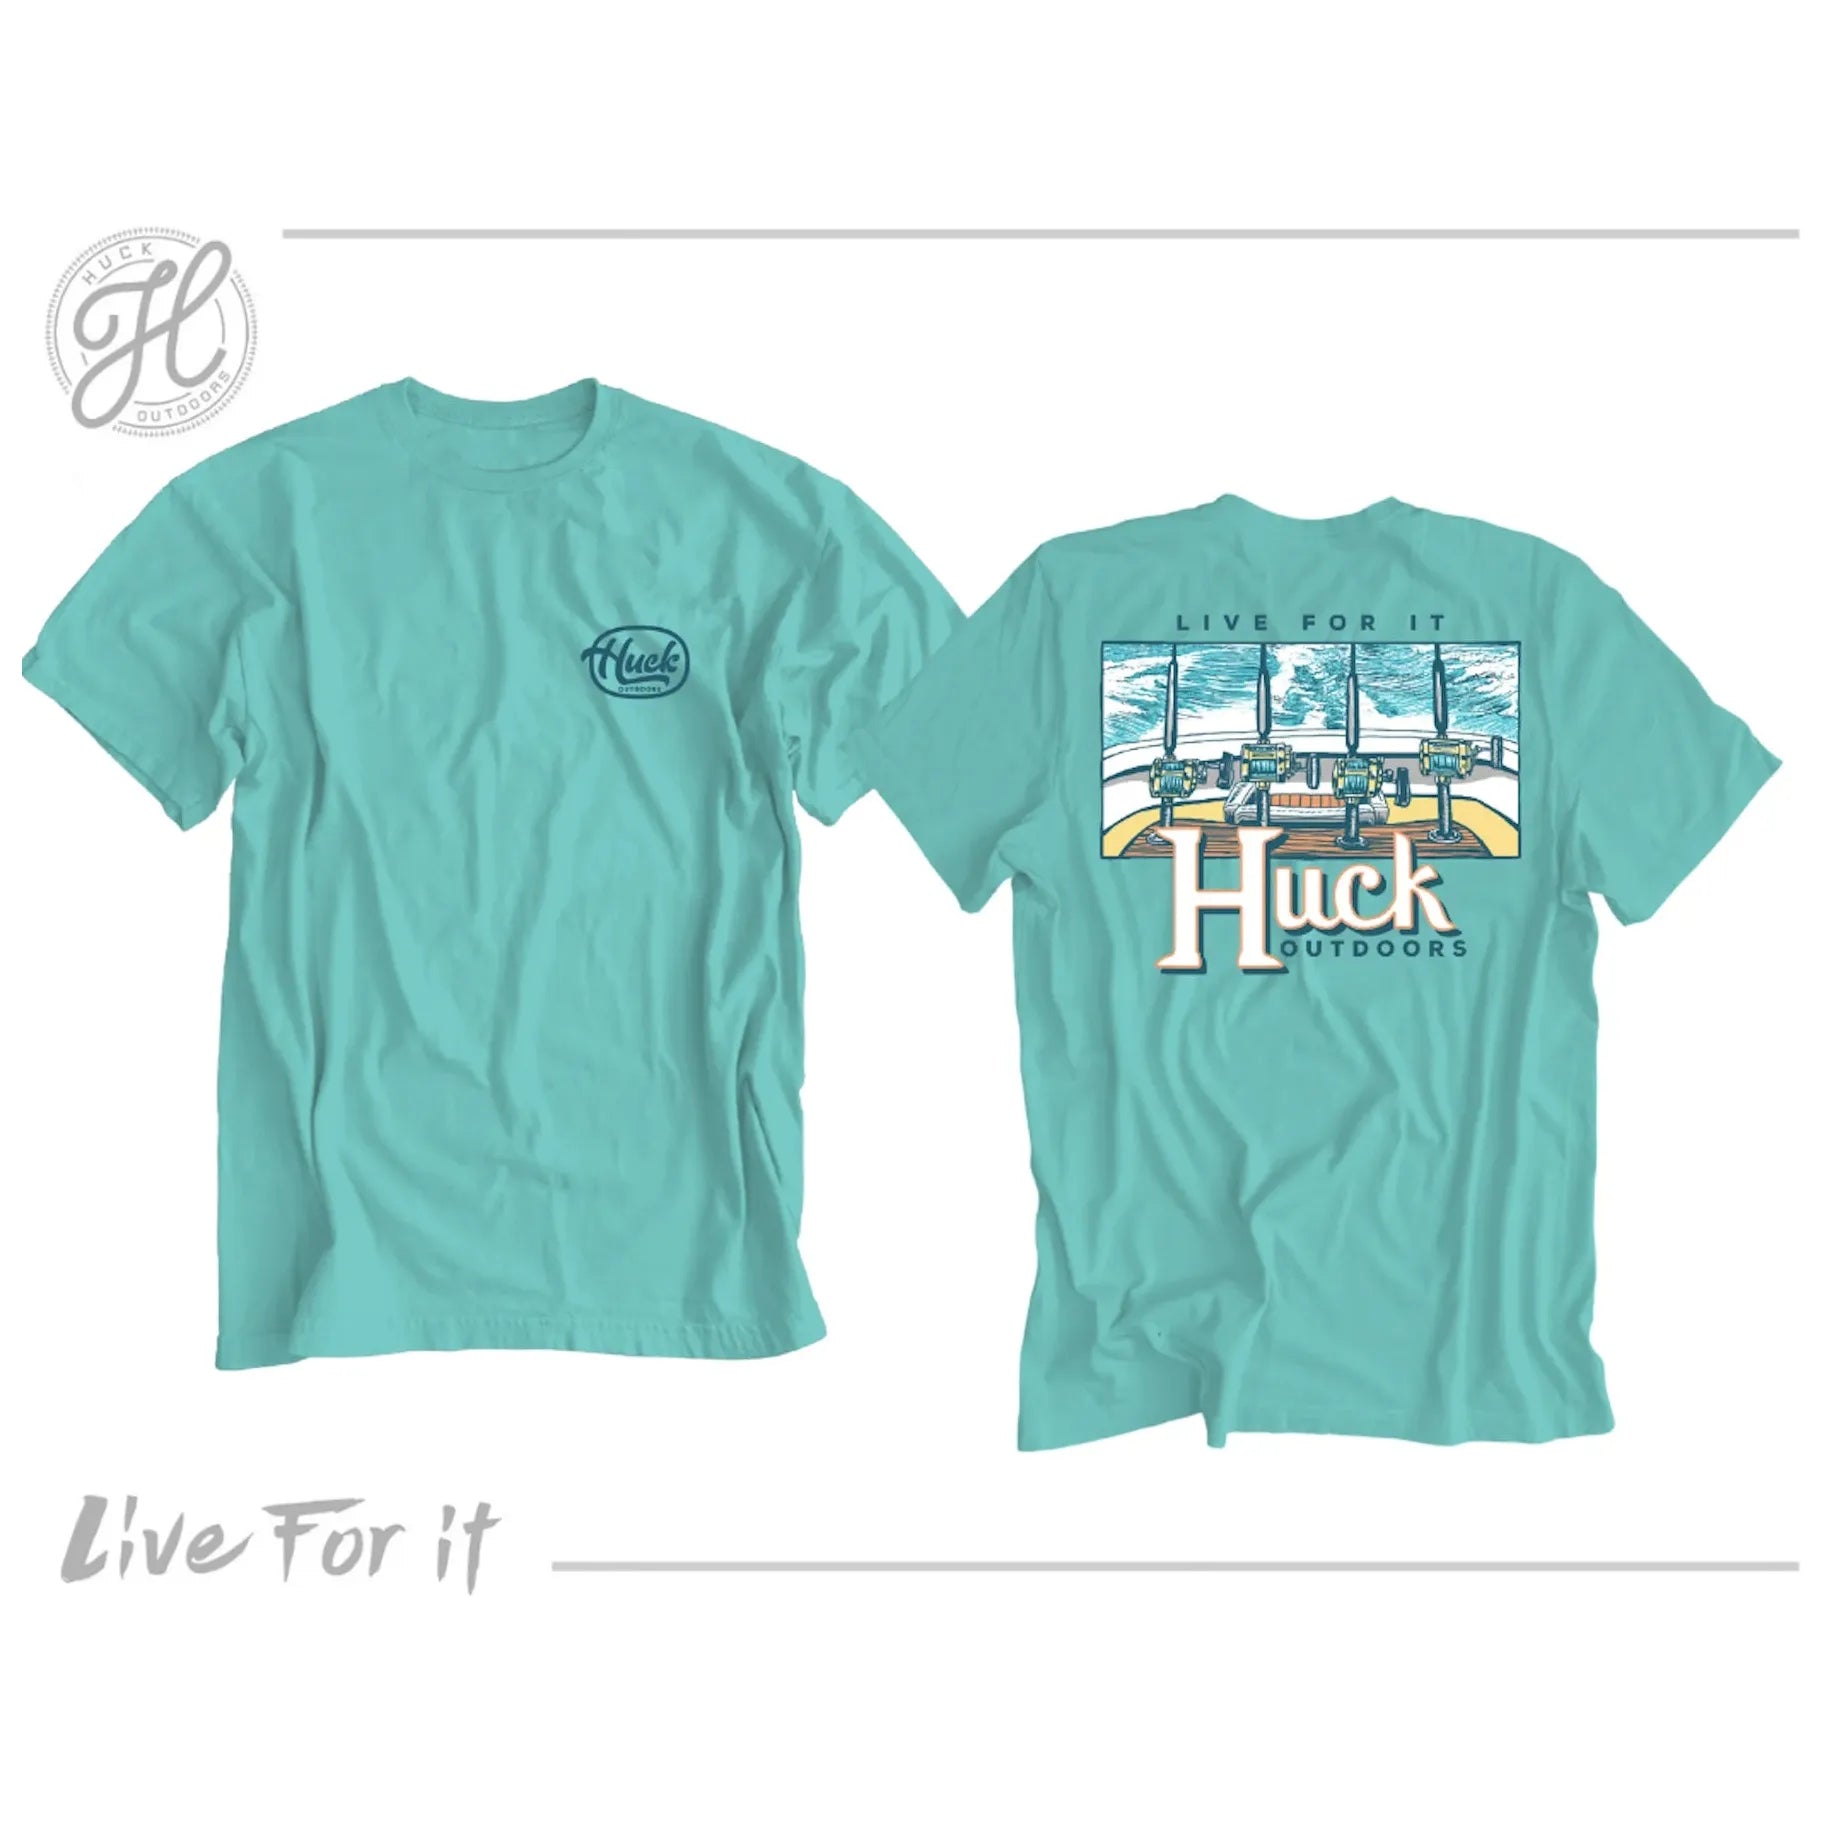 Huck Outdoors Offshore Reels Short Sleeve T Shirt